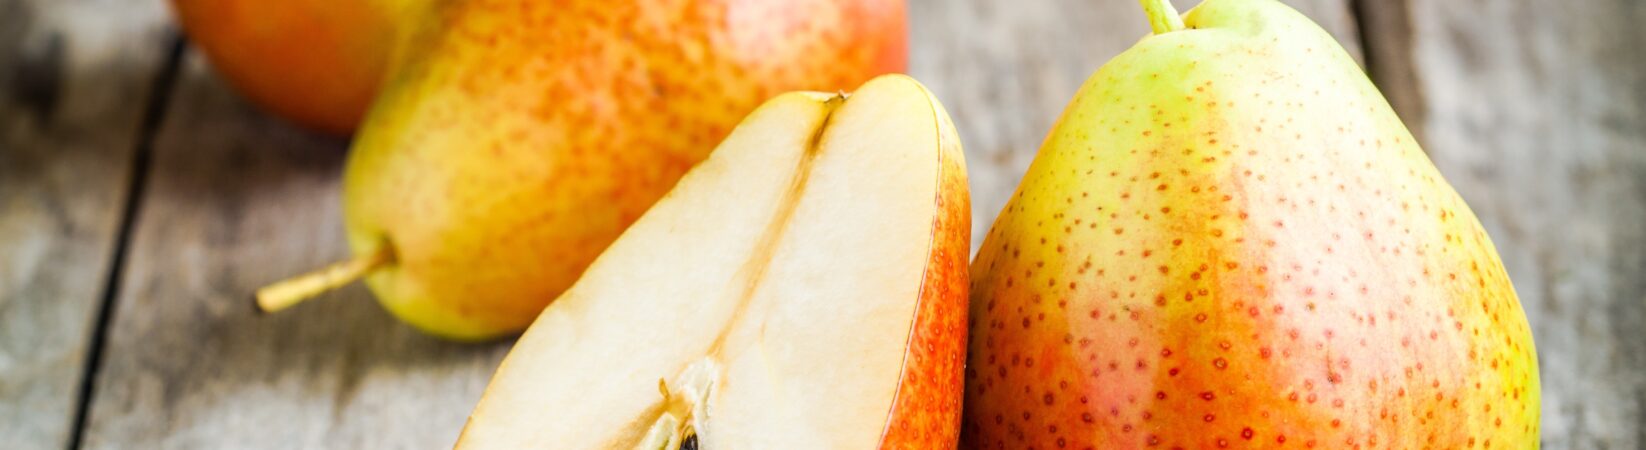 Die Birne – ein ideales Obst zum Abnehmen